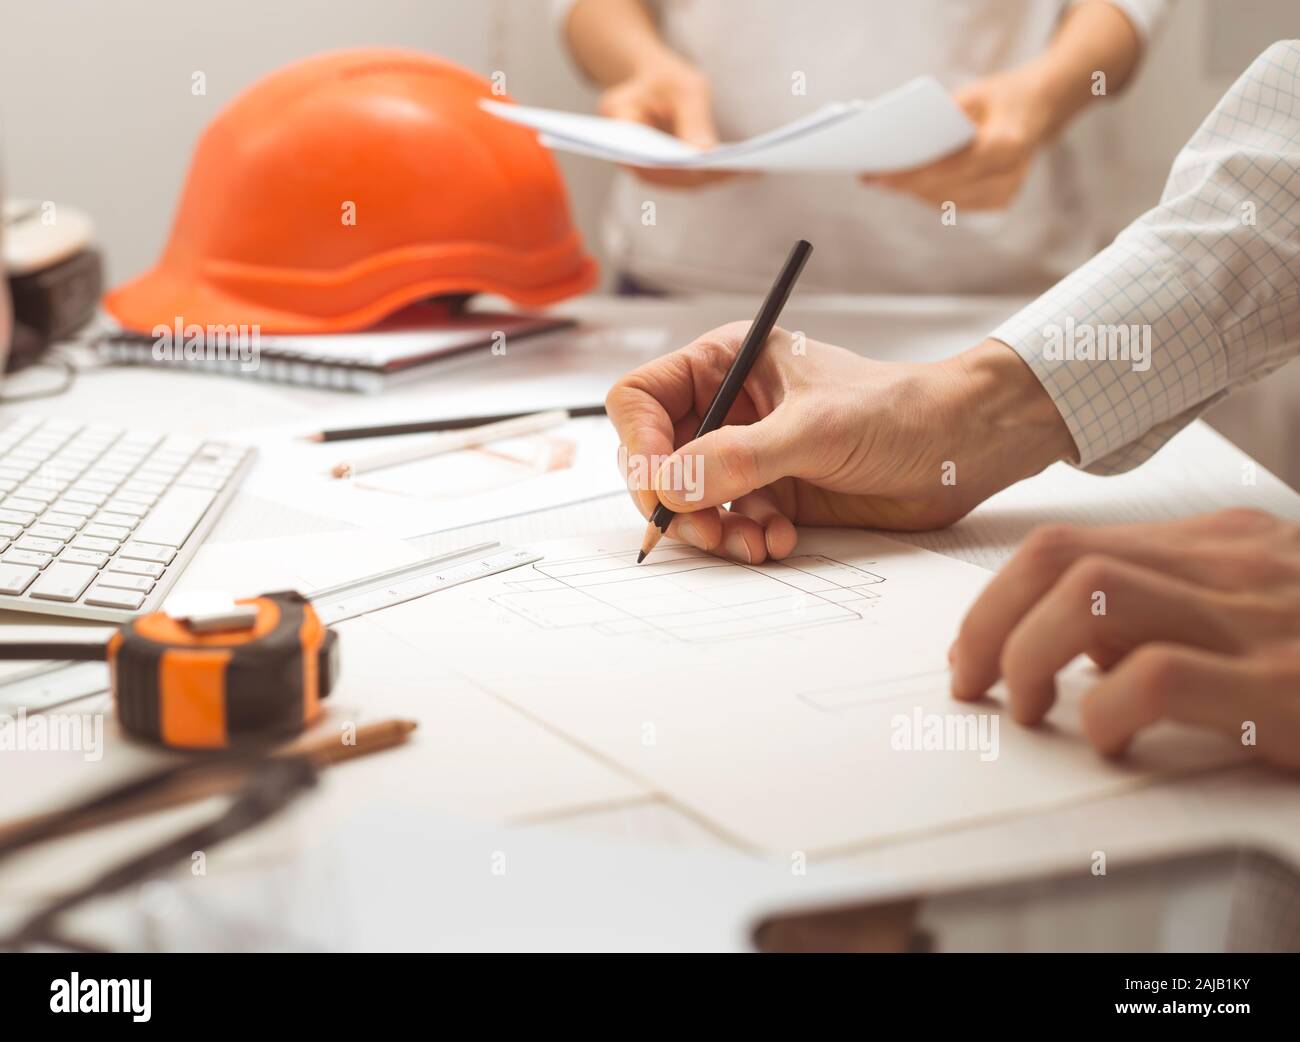 Un team di architetti sviluppa un disegno per progetti di costruzione. Gli ingegneri creano uno schizzo sul posto di lavoro. Concetto di costruzione. Foto Stock